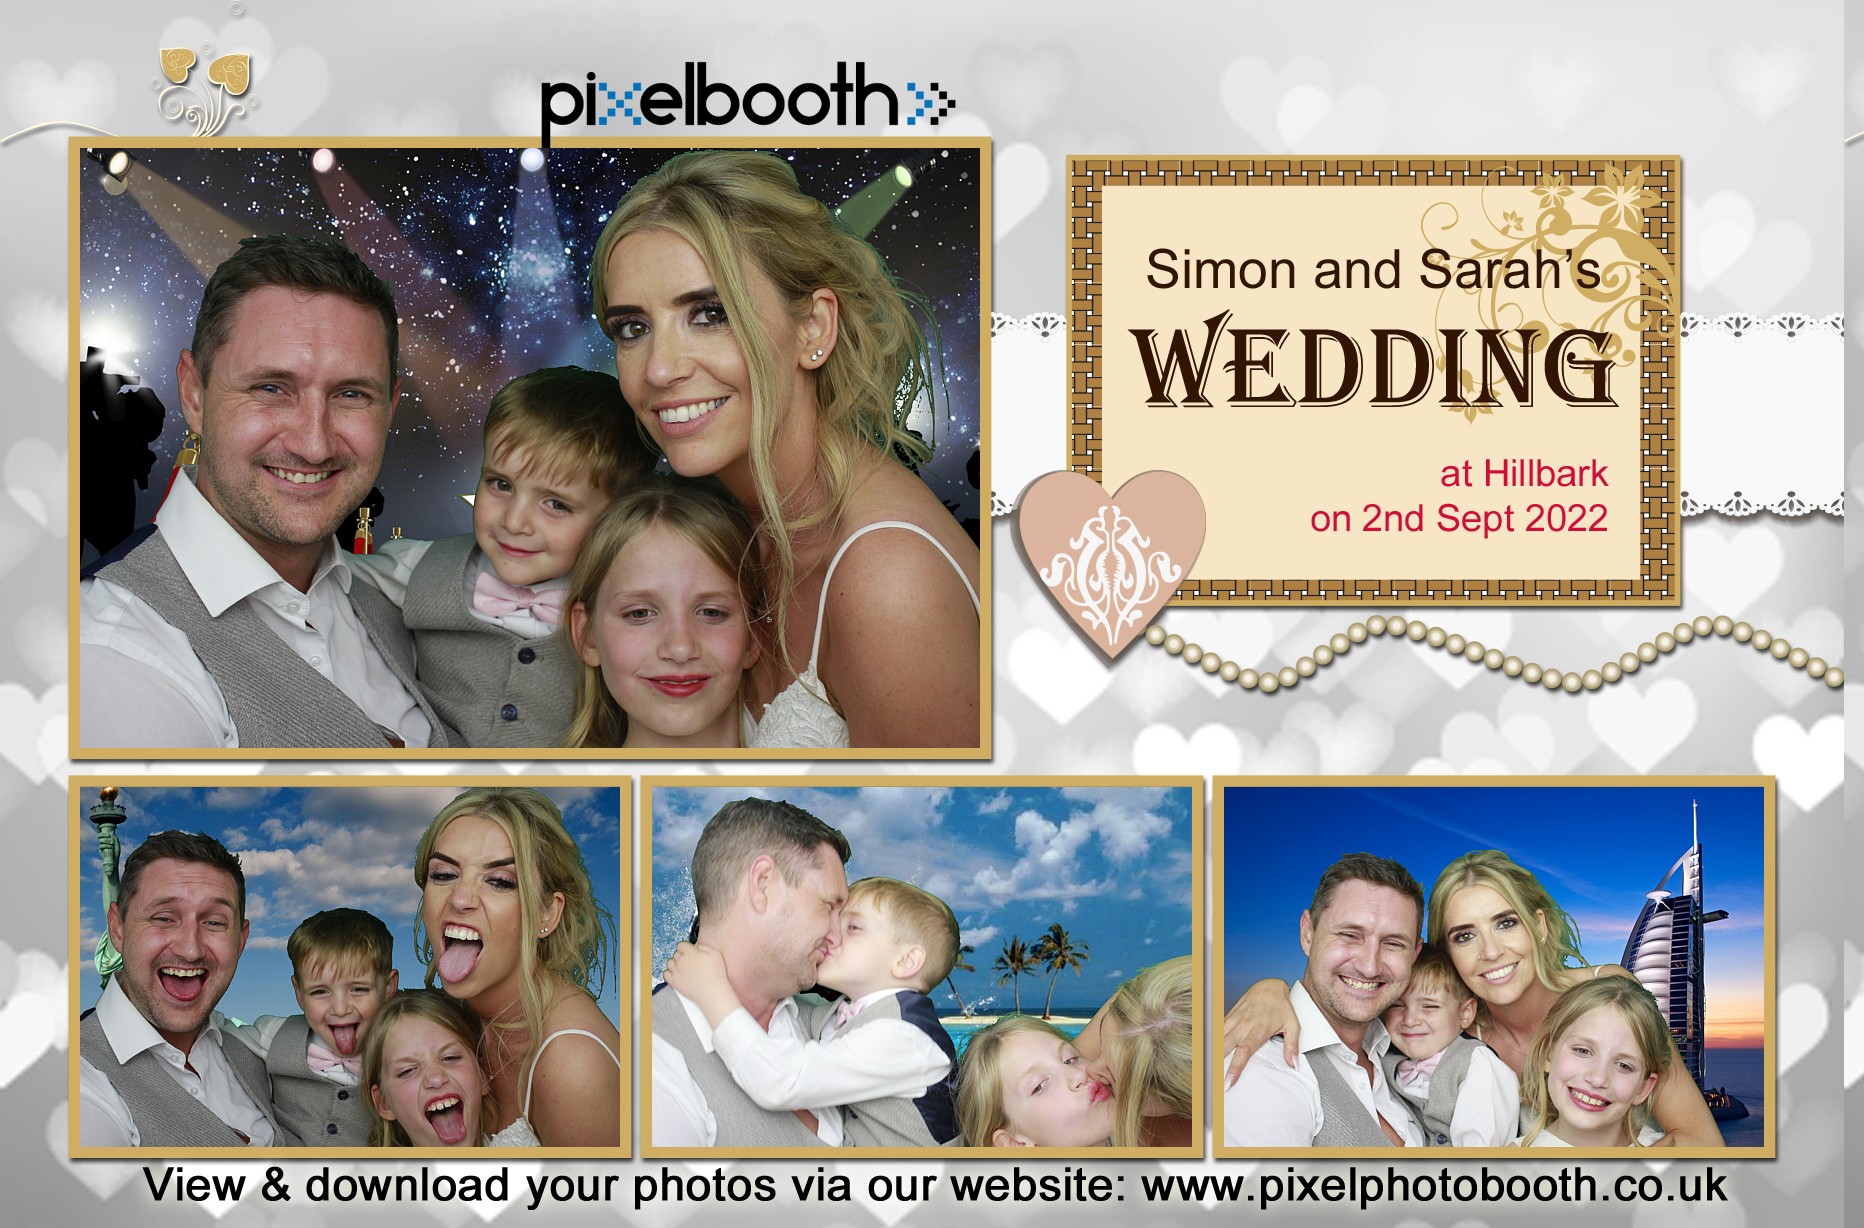 2nd Sept 2022: Simon and Sarah's Wedding at Hillbark